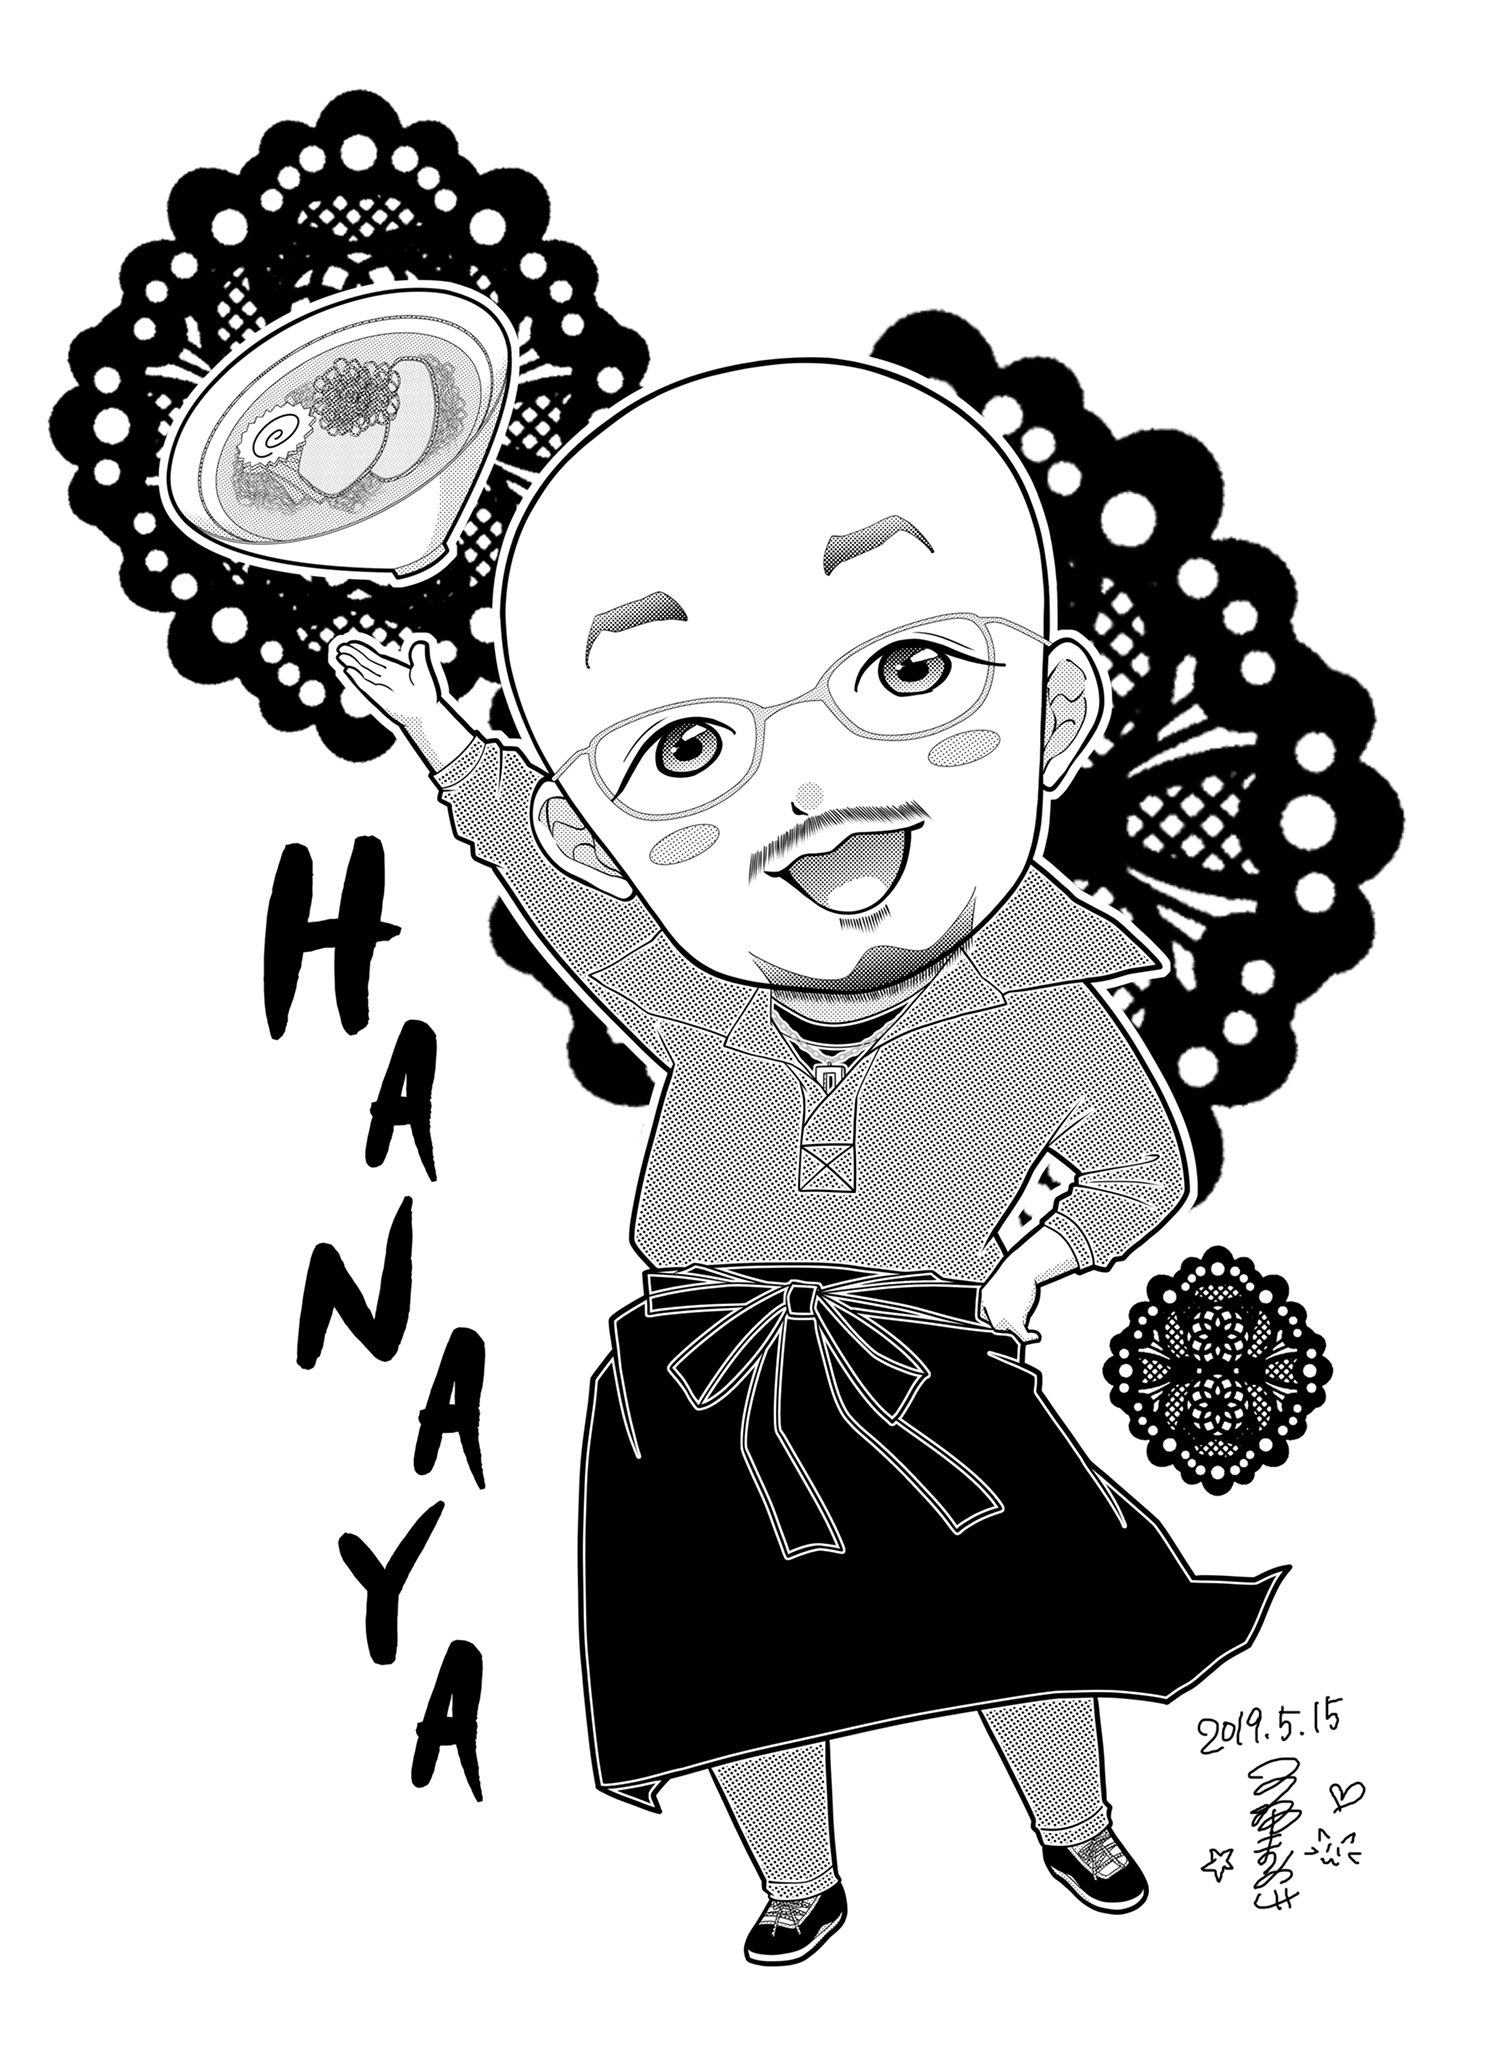 漫画家 小坂まりこ 新pn 真上あん子 大将本当にありがとうございました お待たせしてすみませんでした Twitter